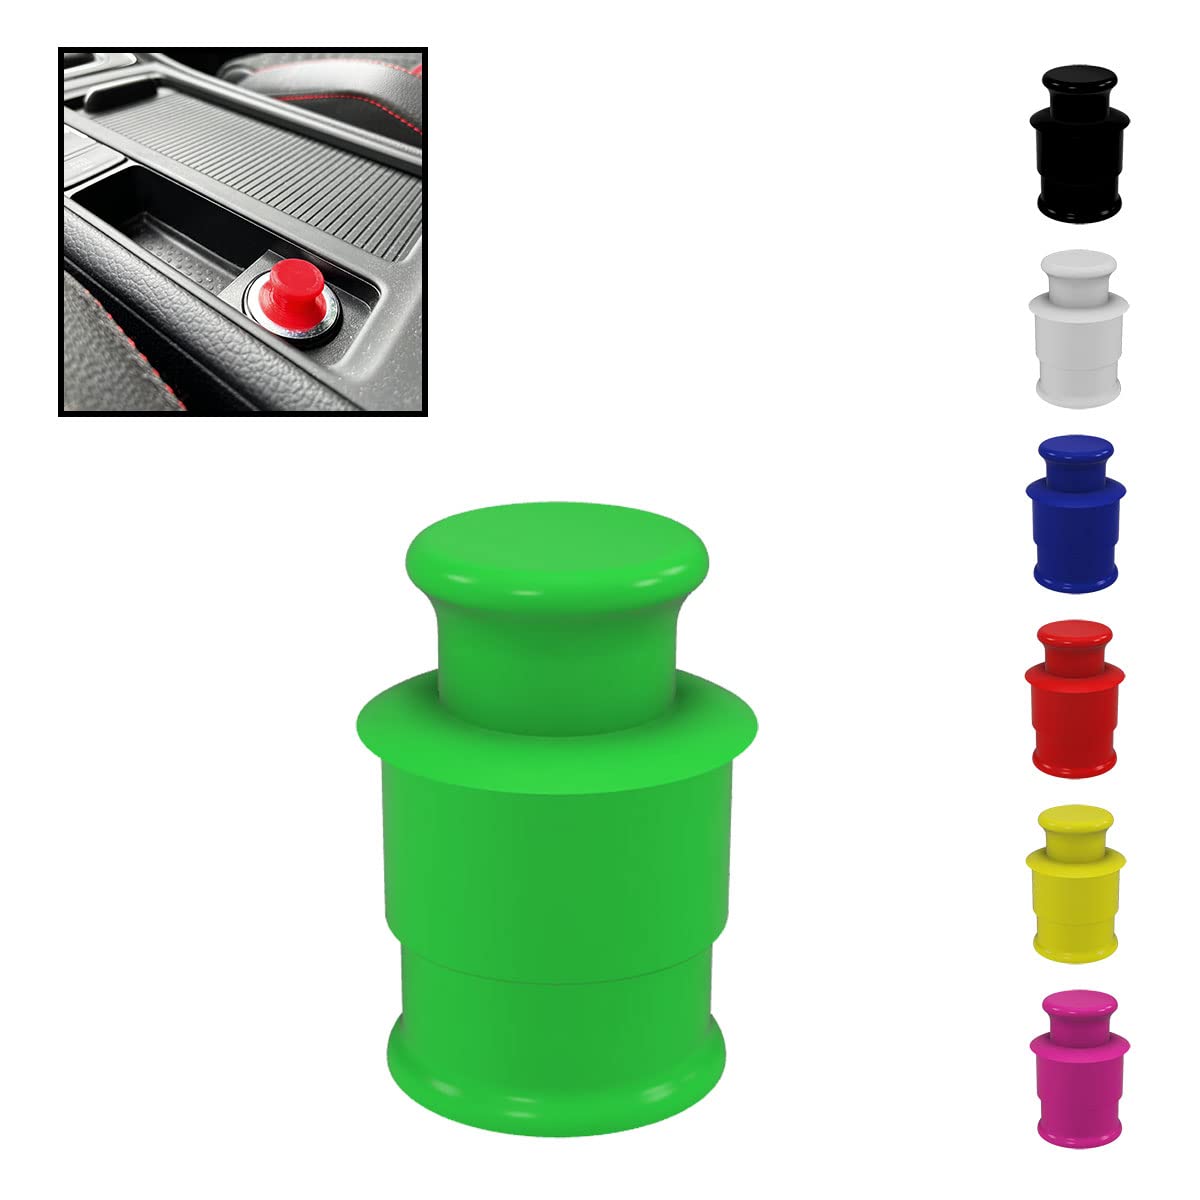 Zigarettenanzünder Abdeckung Steckdose 12V - Auswahl aus 7 Farben (Grün) von R-Satz Shop